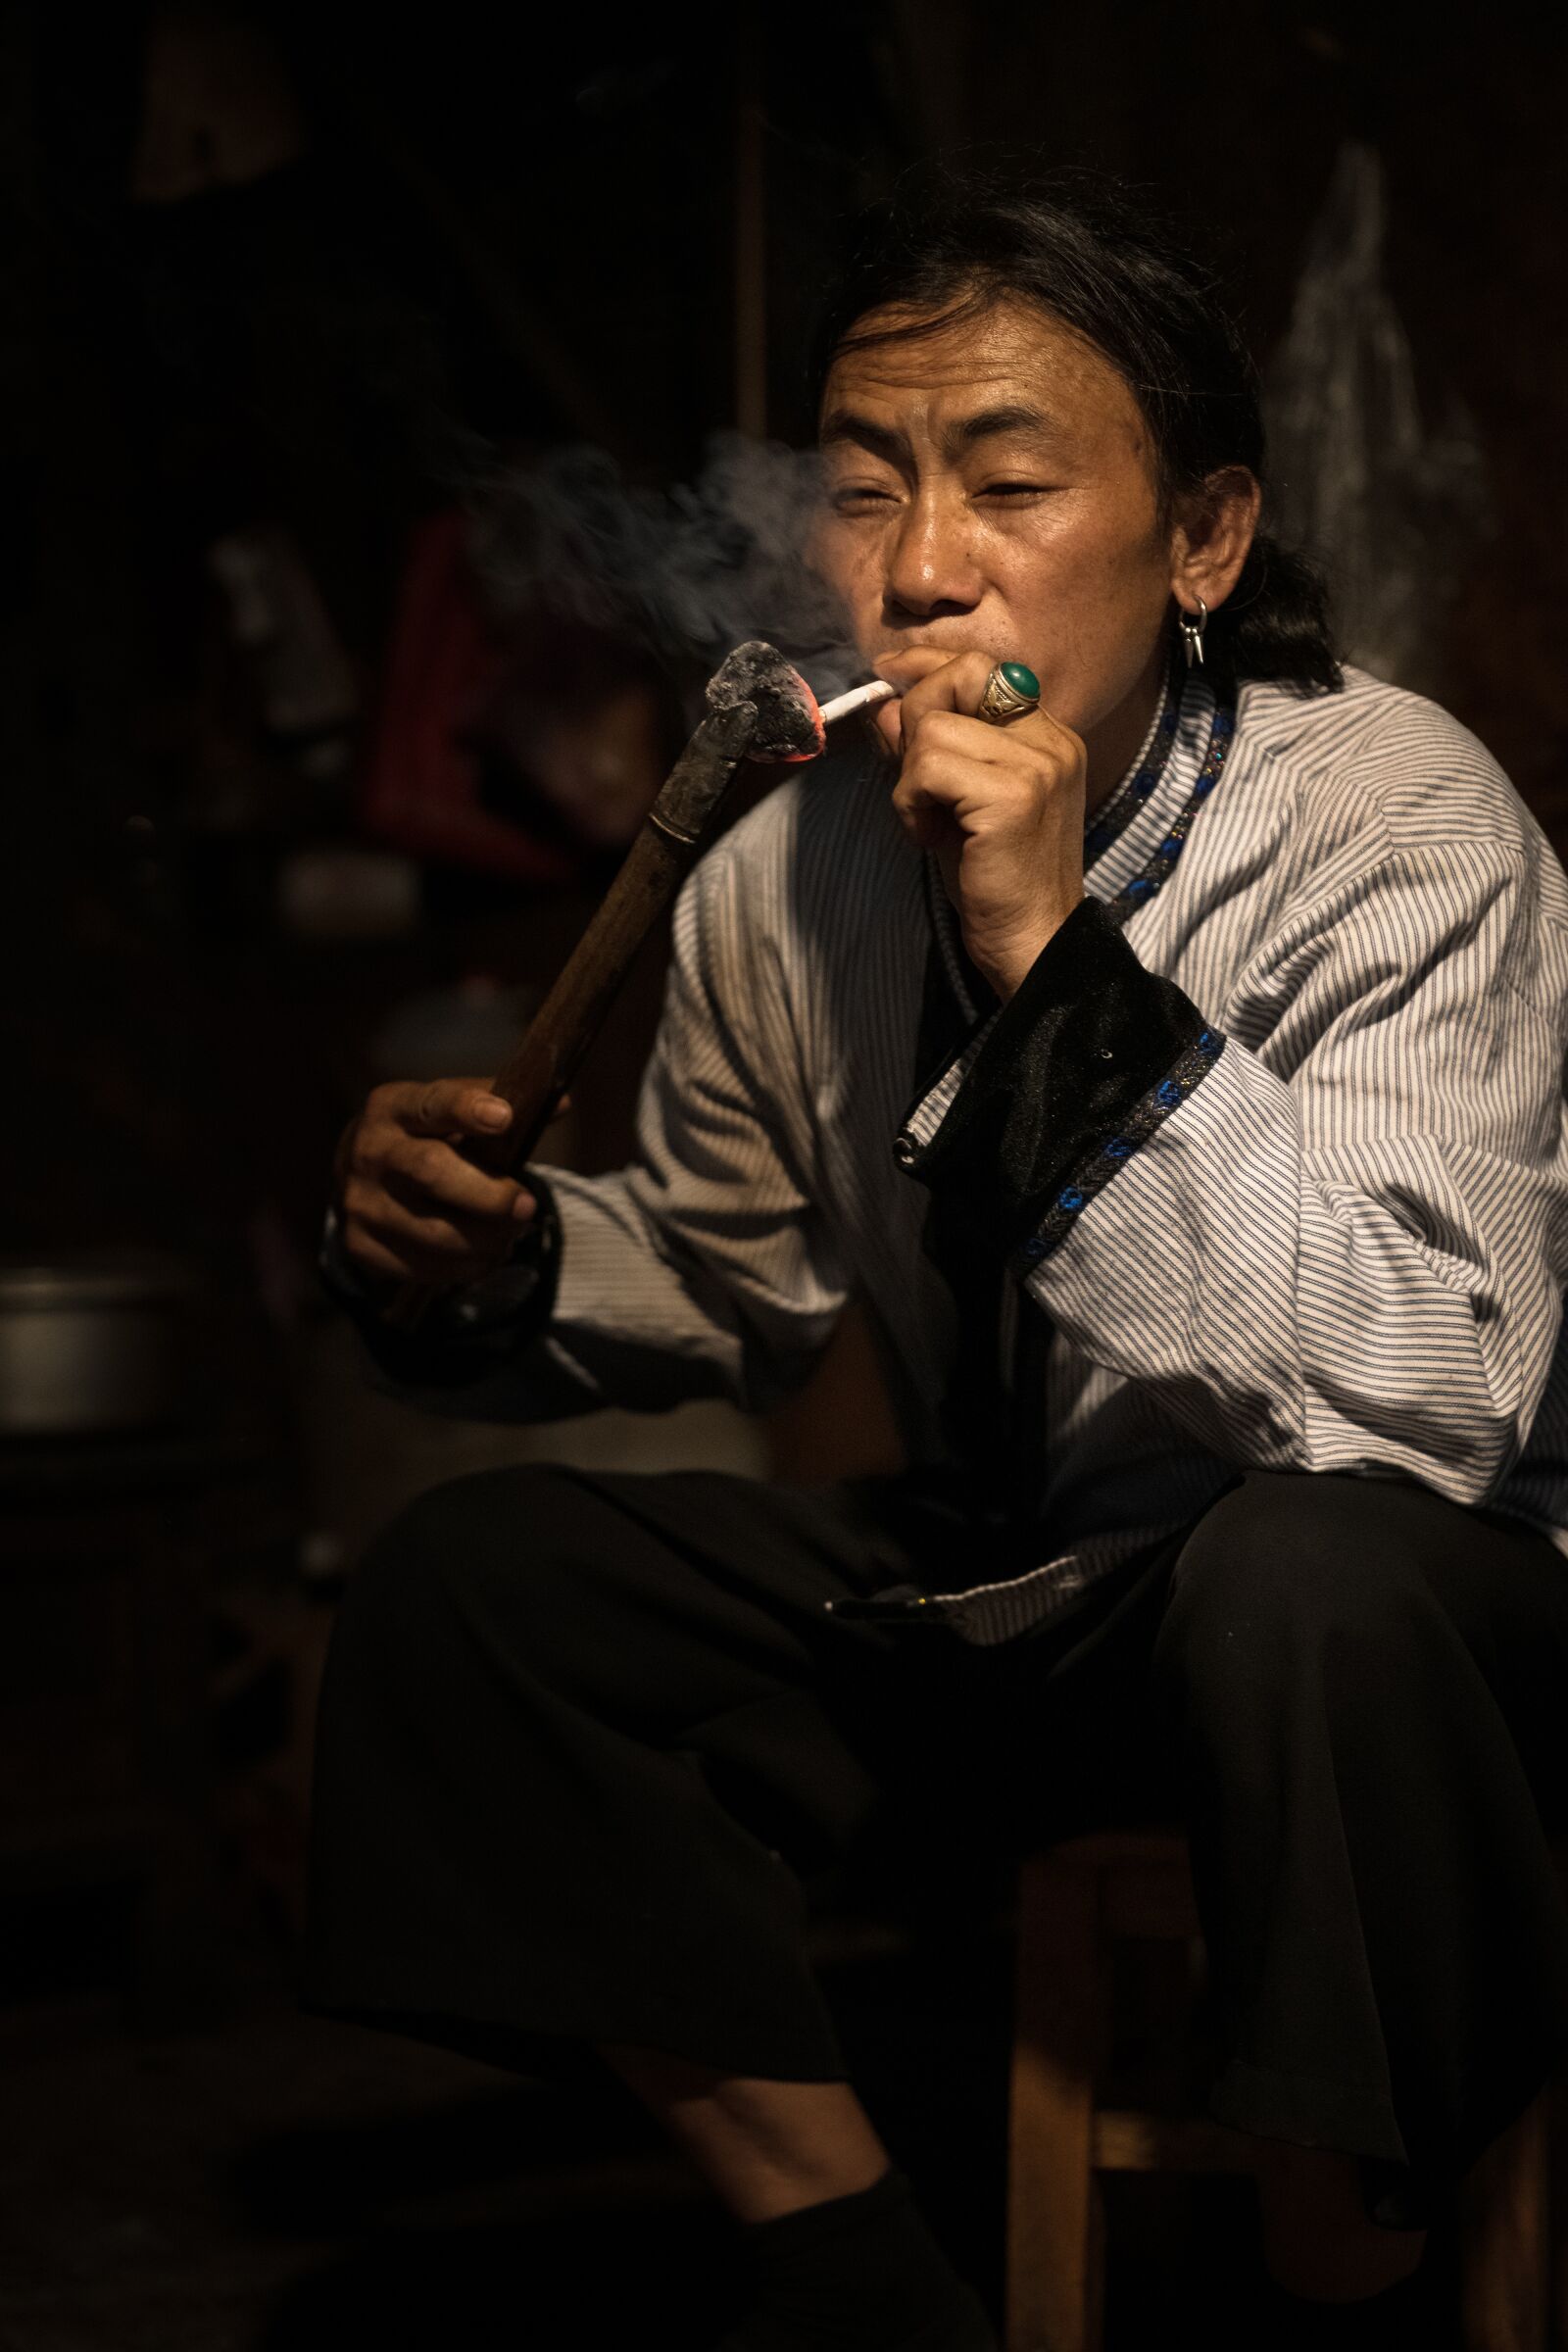 Nikon D850 sample photo. Asian man smoking, asian photography